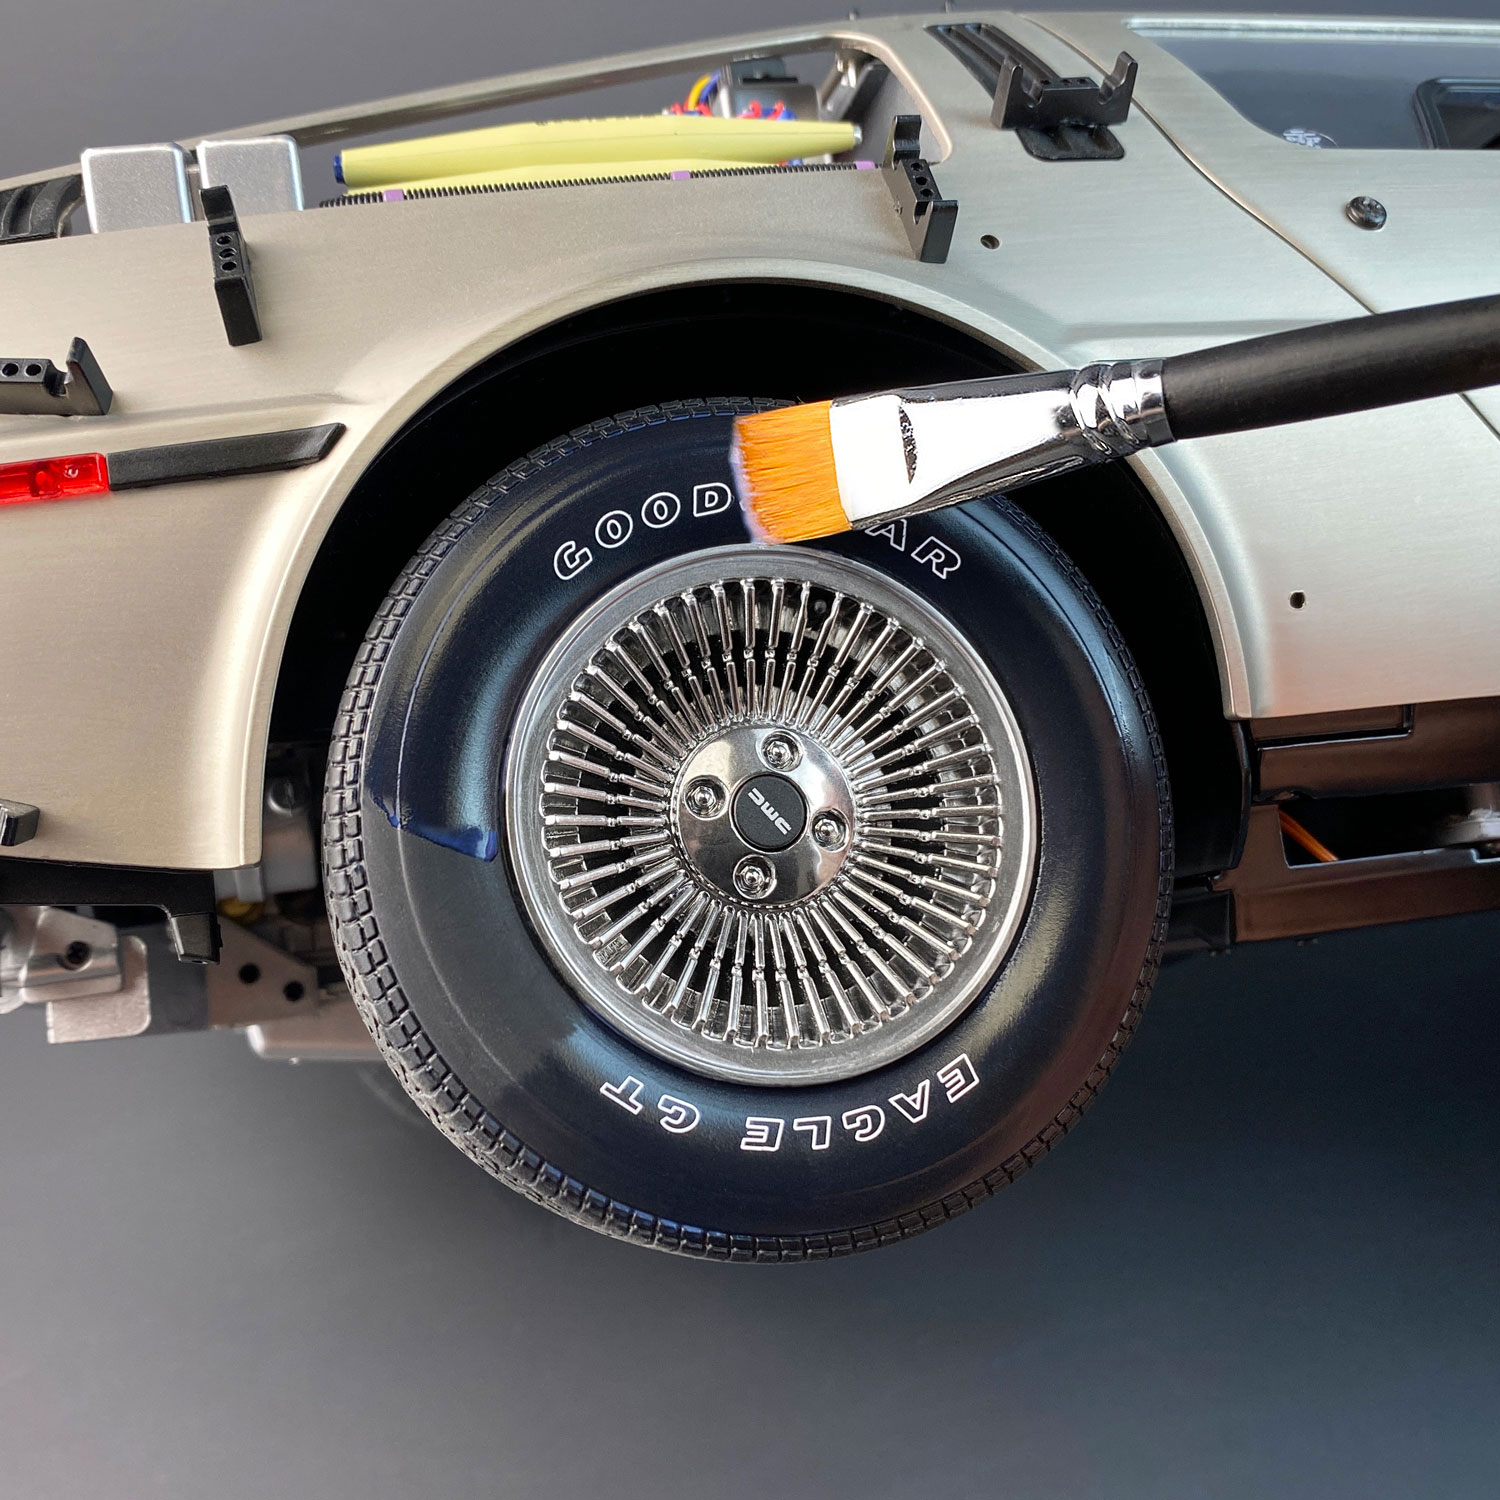 Applying Model Tyre Dressing to DeLorean model tyre